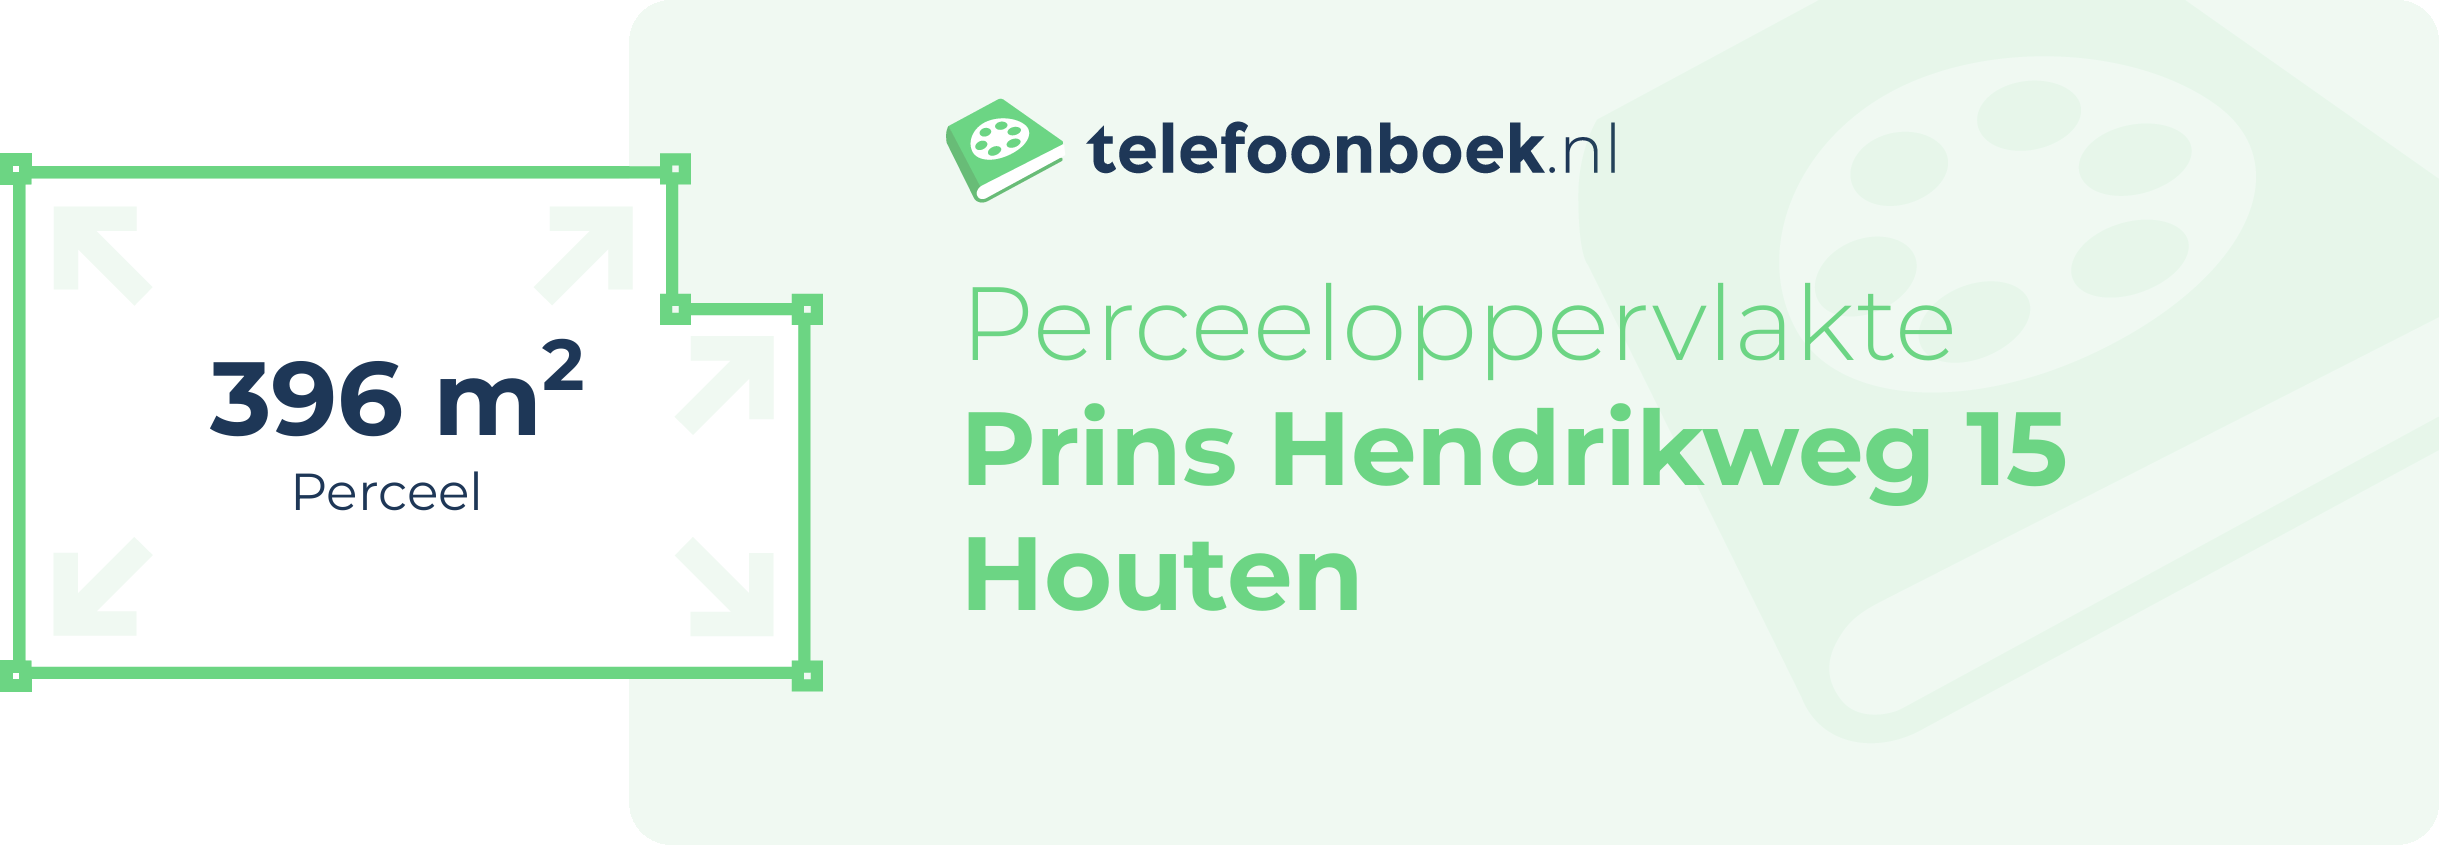 Perceeloppervlakte Prins Hendrikweg 15 Houten